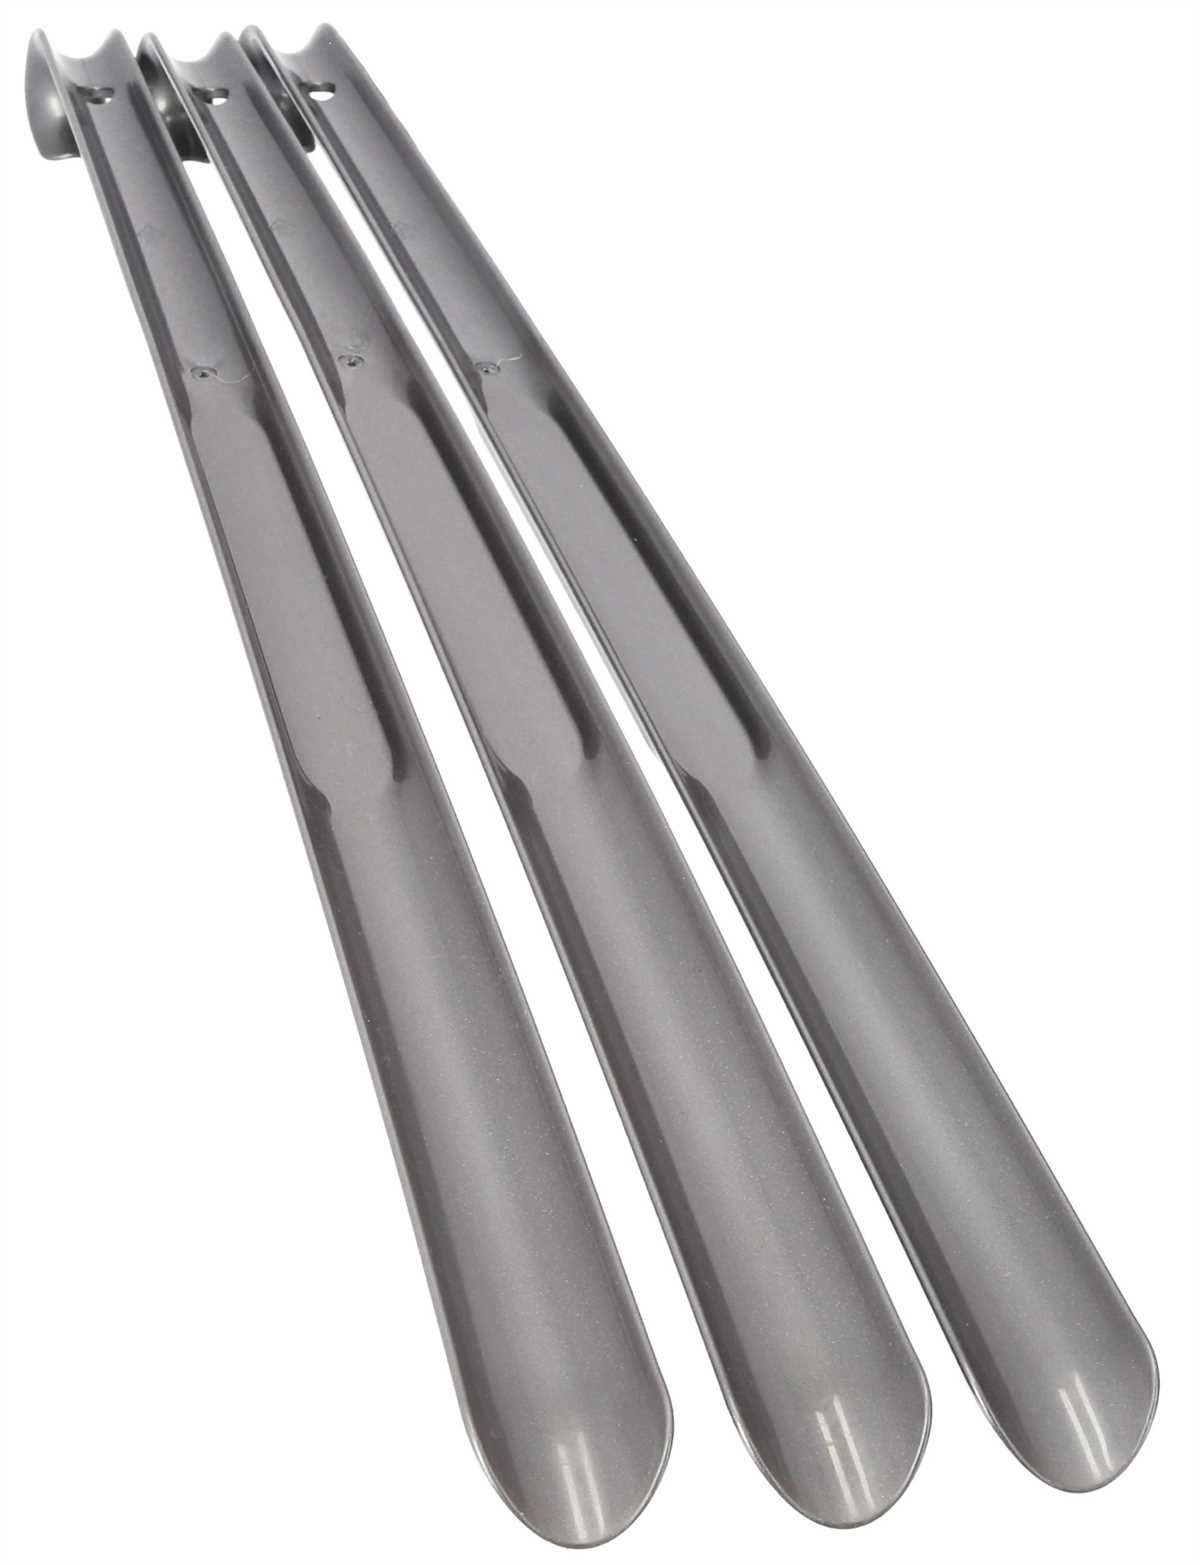 Metall Schuhanzieher Schuhlöffel Anziehhilfe stabil Stahl lang 52 cm XL